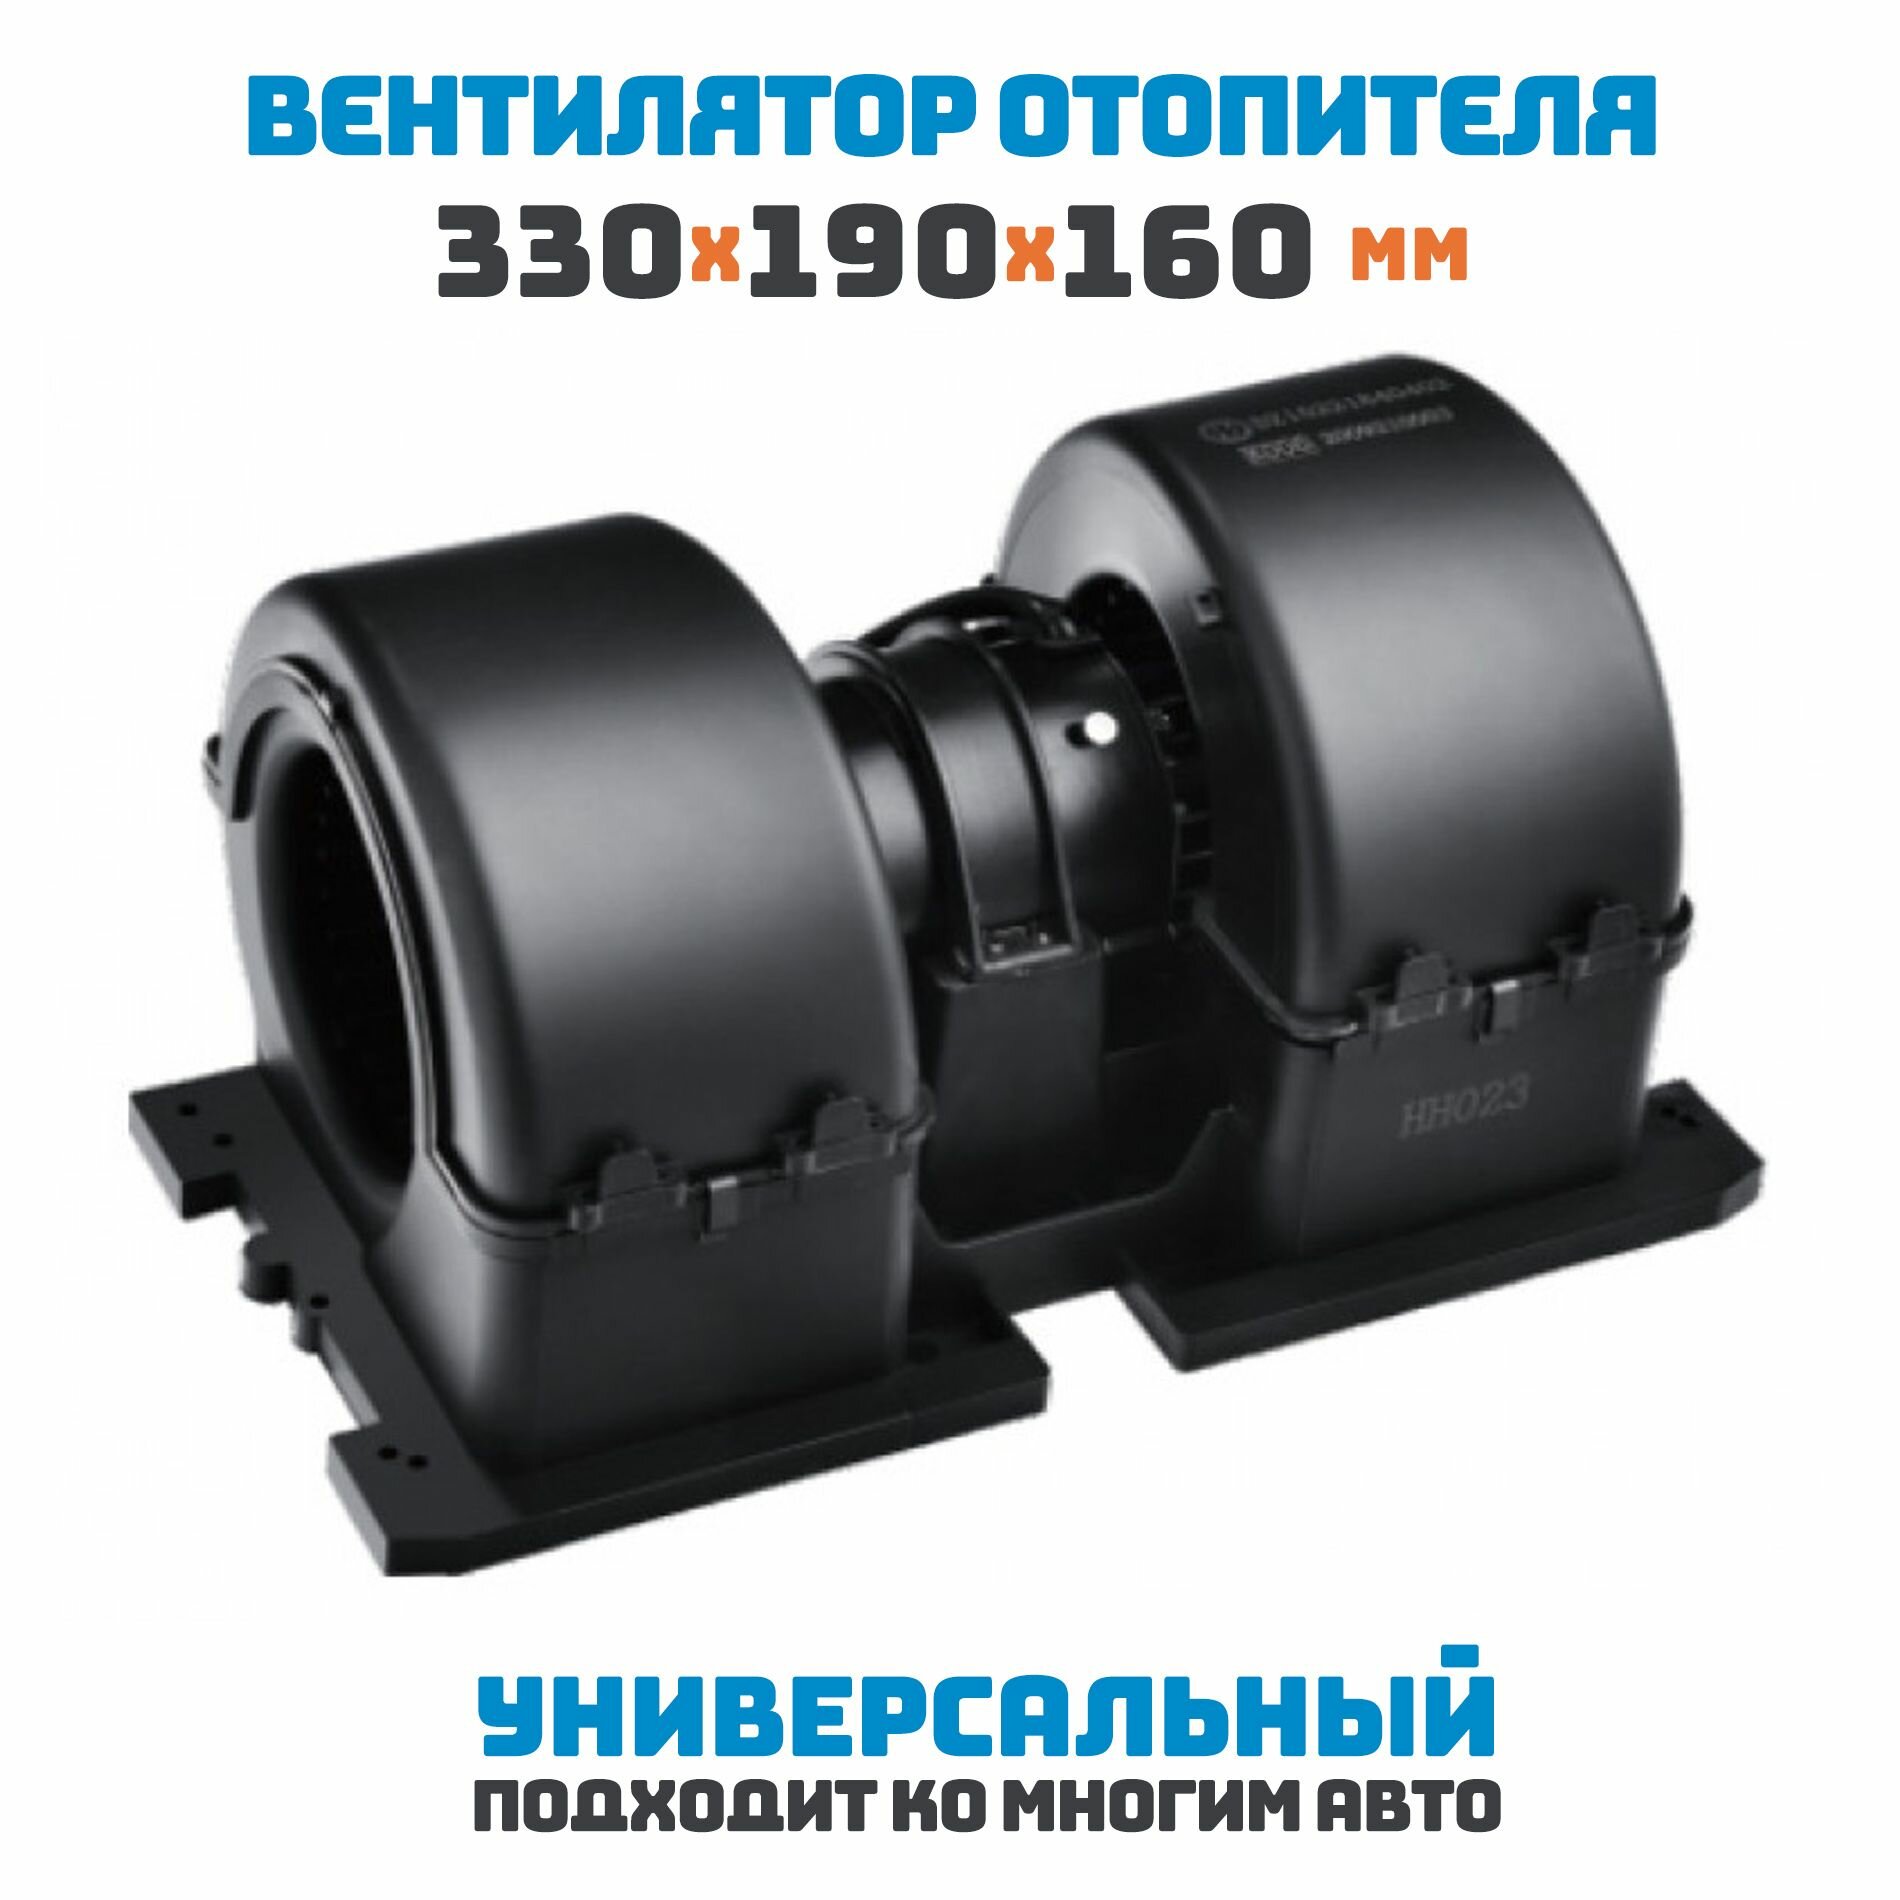 Вентилятор отопителя универсальный 330х190х160 мм / 24 В / 430 Ватт / сдвоенный.